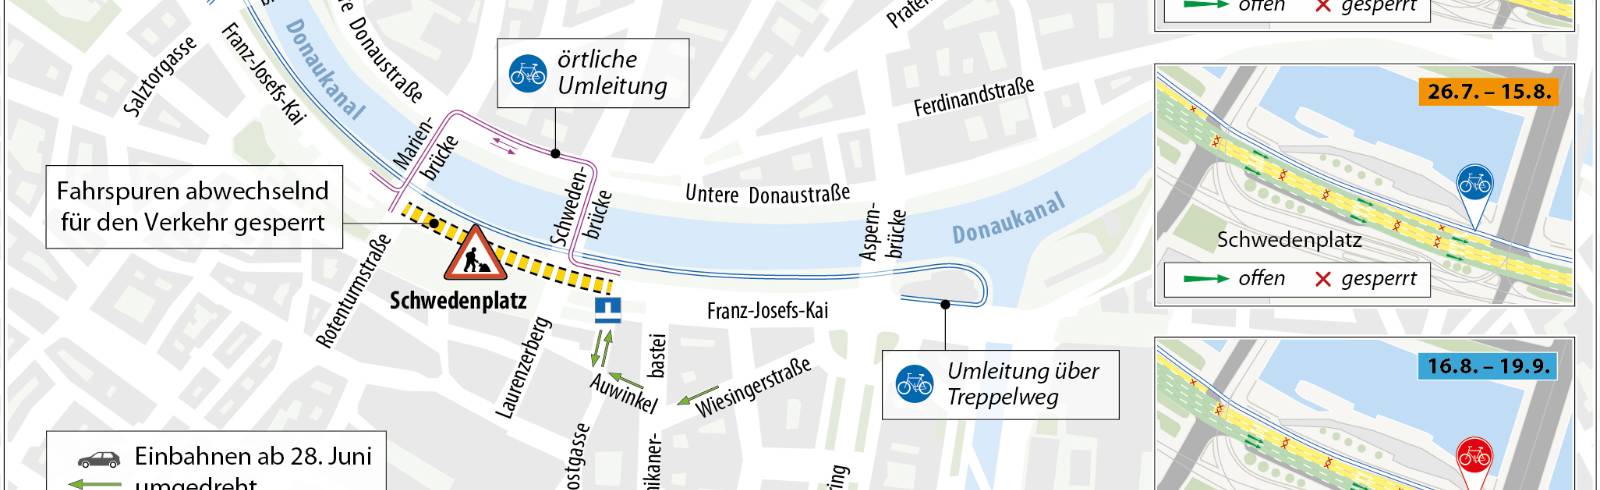 Bezirksflash: Staugefahr am Franzjosefskai ab Samstag